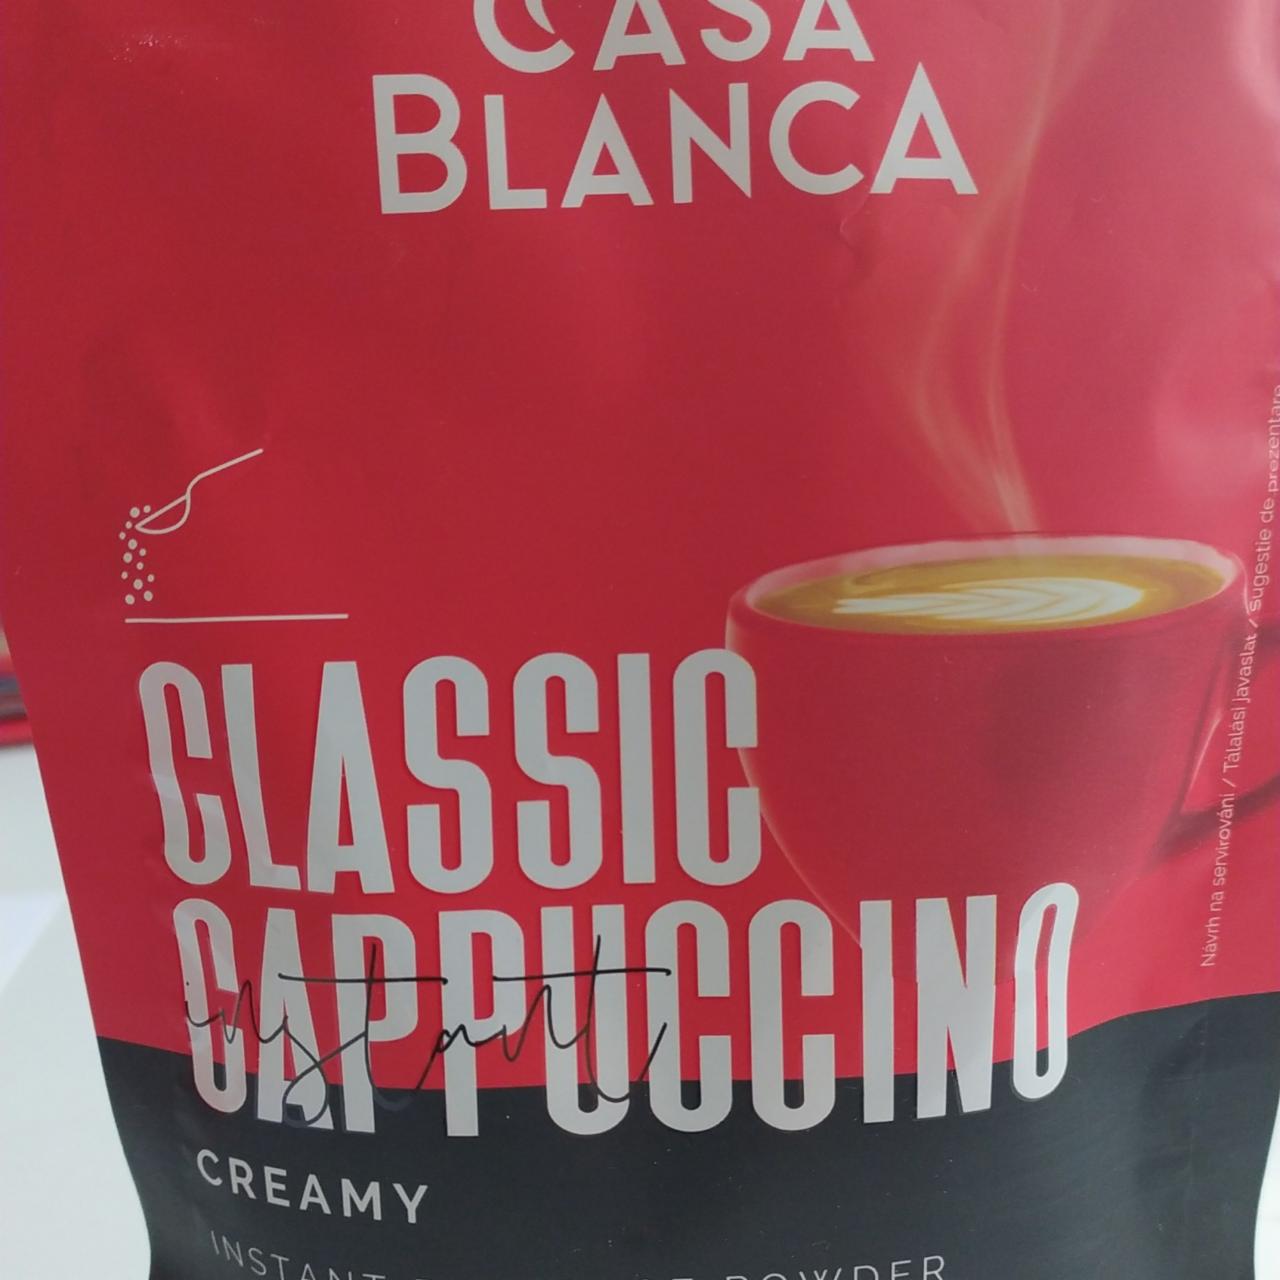 Fotografie - Classic Cappuccino creamy Casa Blanca